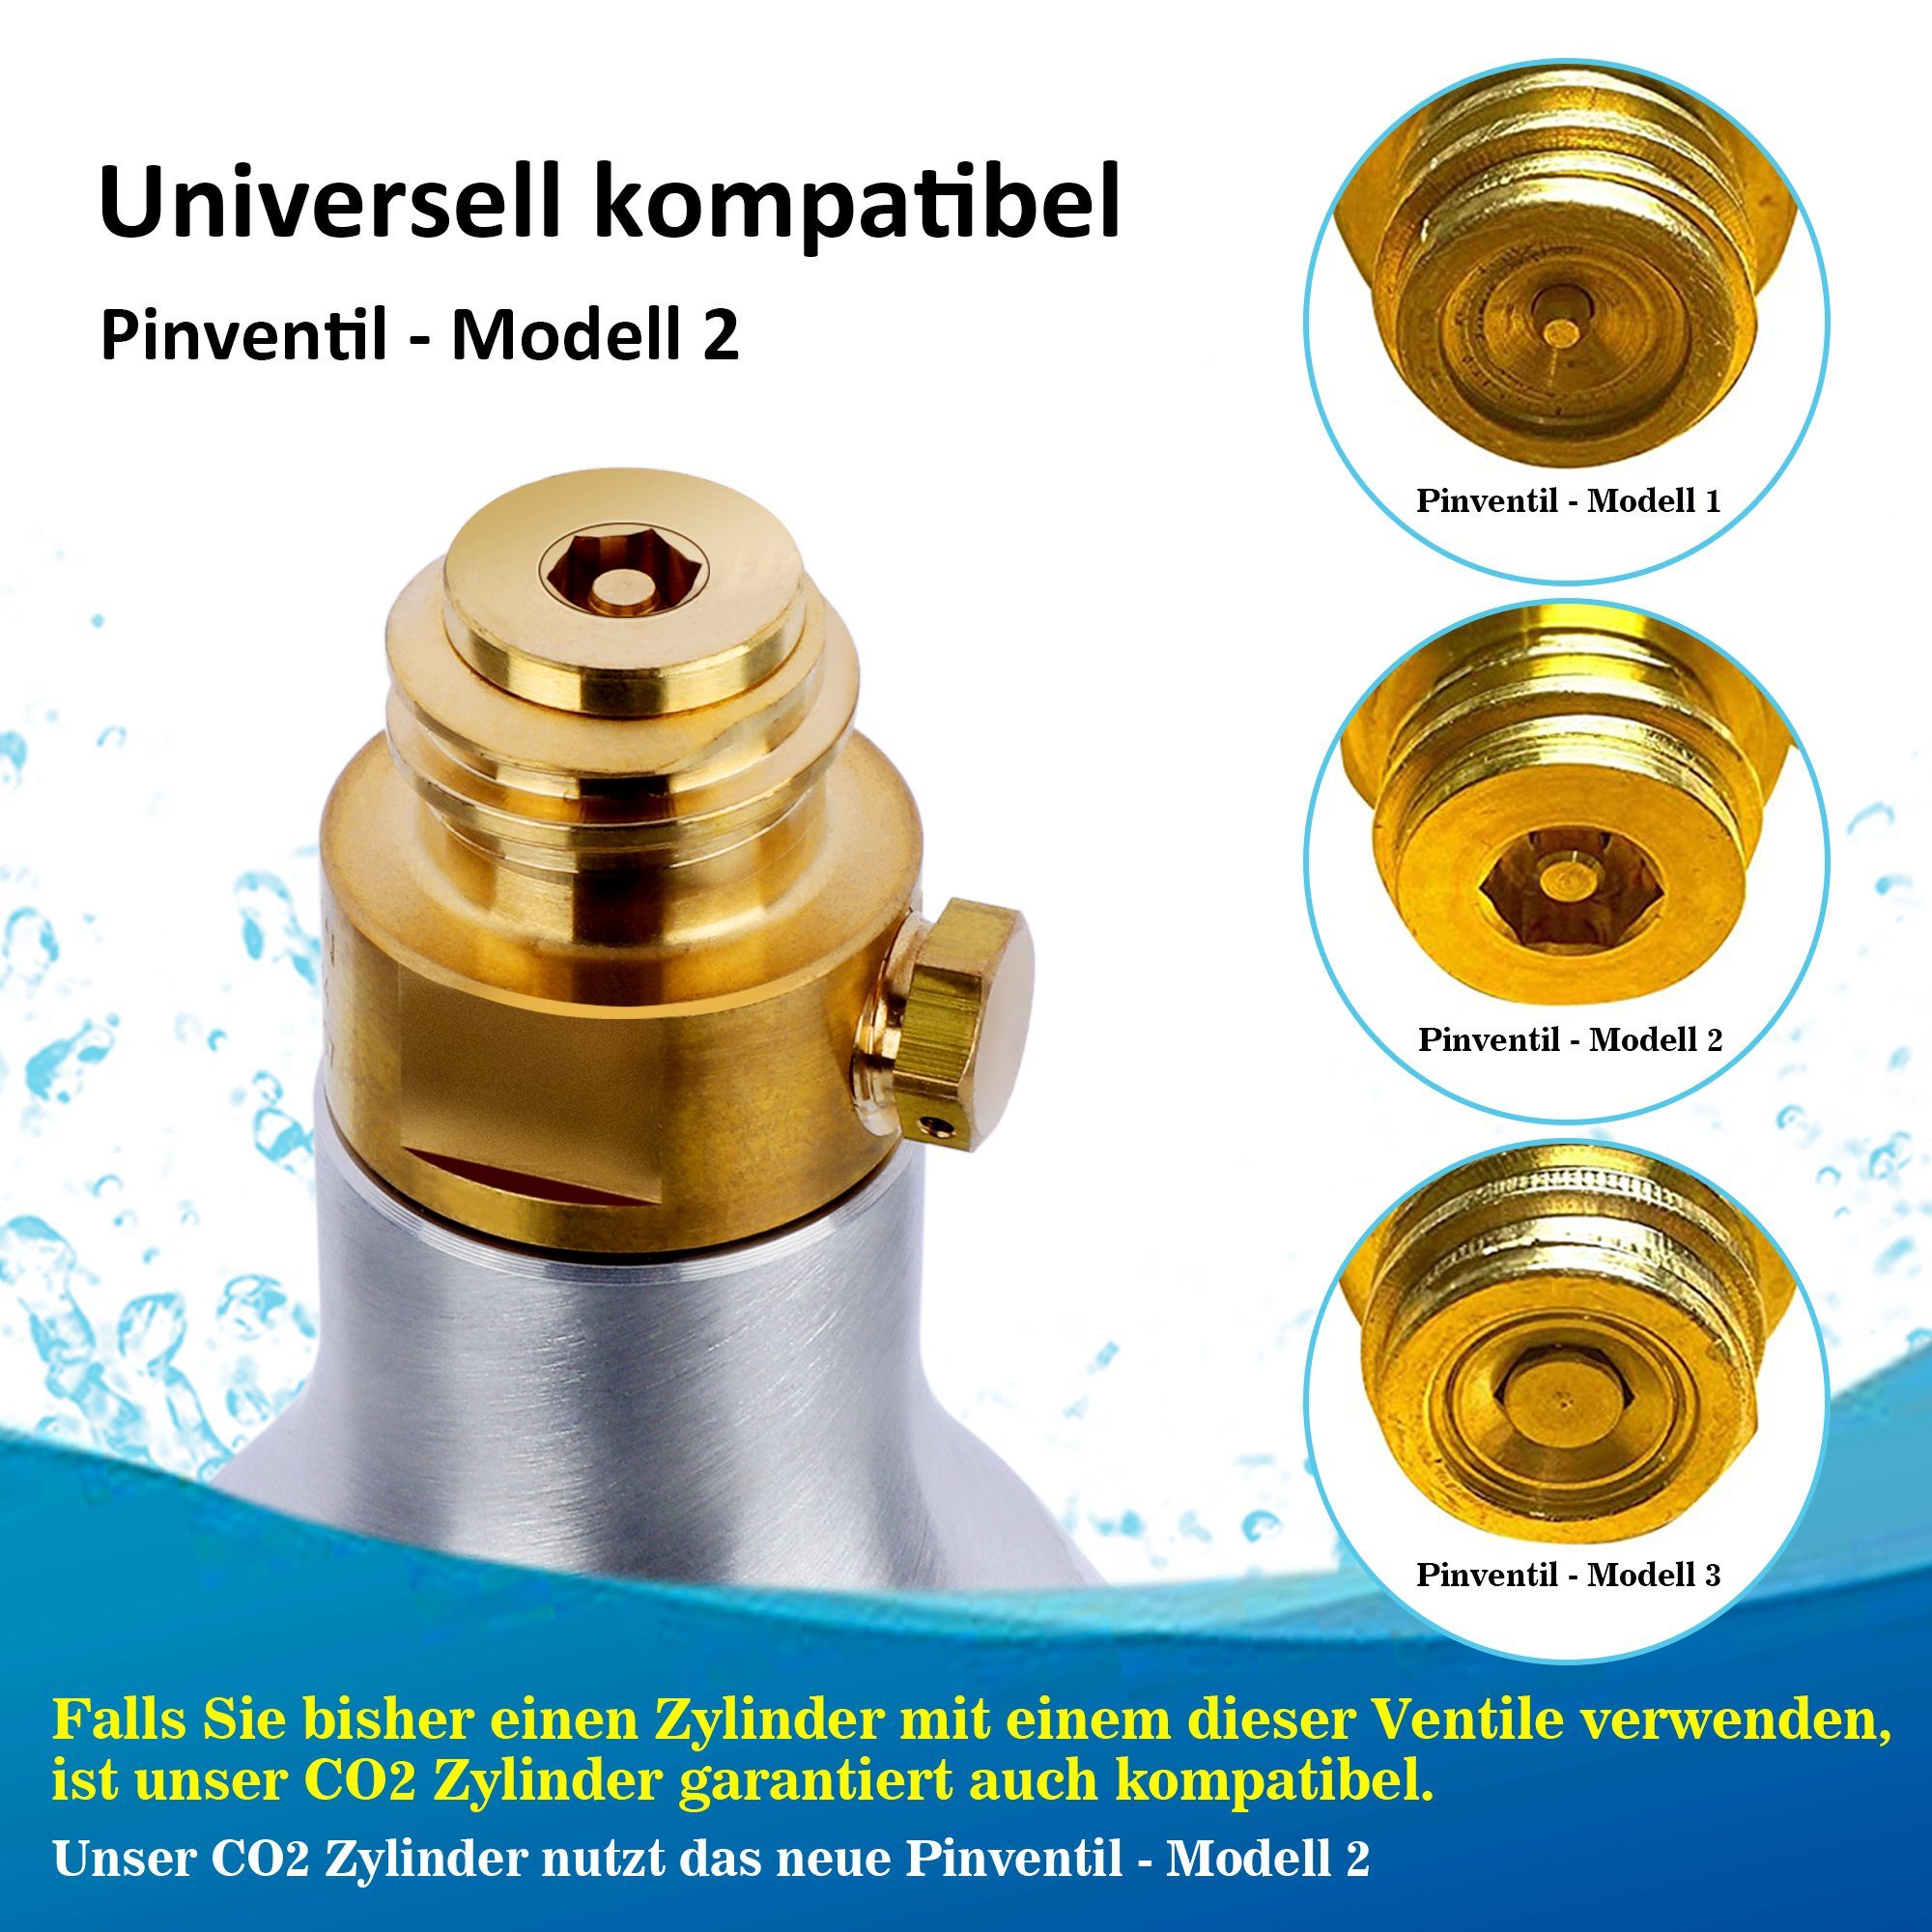 Homewit Wassersprudler »CZHE60«, (Für bis zu 60 L Getränke, 1-tlg., 1 Stück CO2  Zylinder Kohlendioxid Zylinder 425g), Erstbefüllt in Deutschland